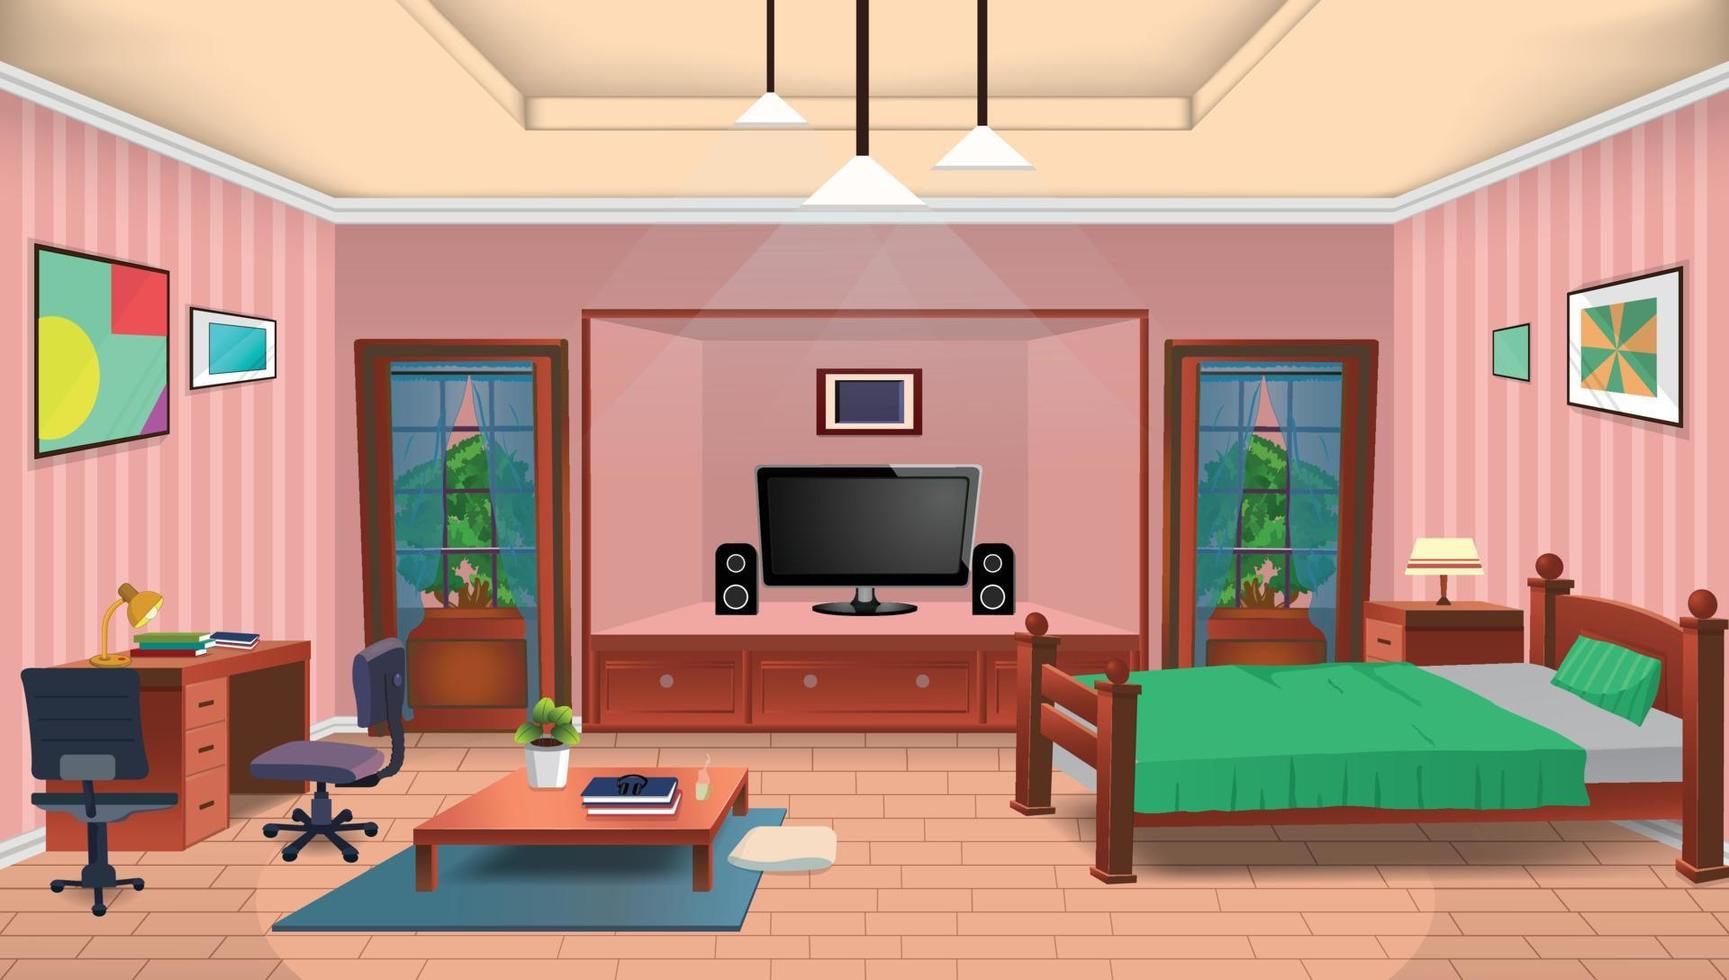 intérieur de salon de dessin animé vectoriel avec grandes fenêtres, lit, chaise, télévision, table et plantes d'intérieur.